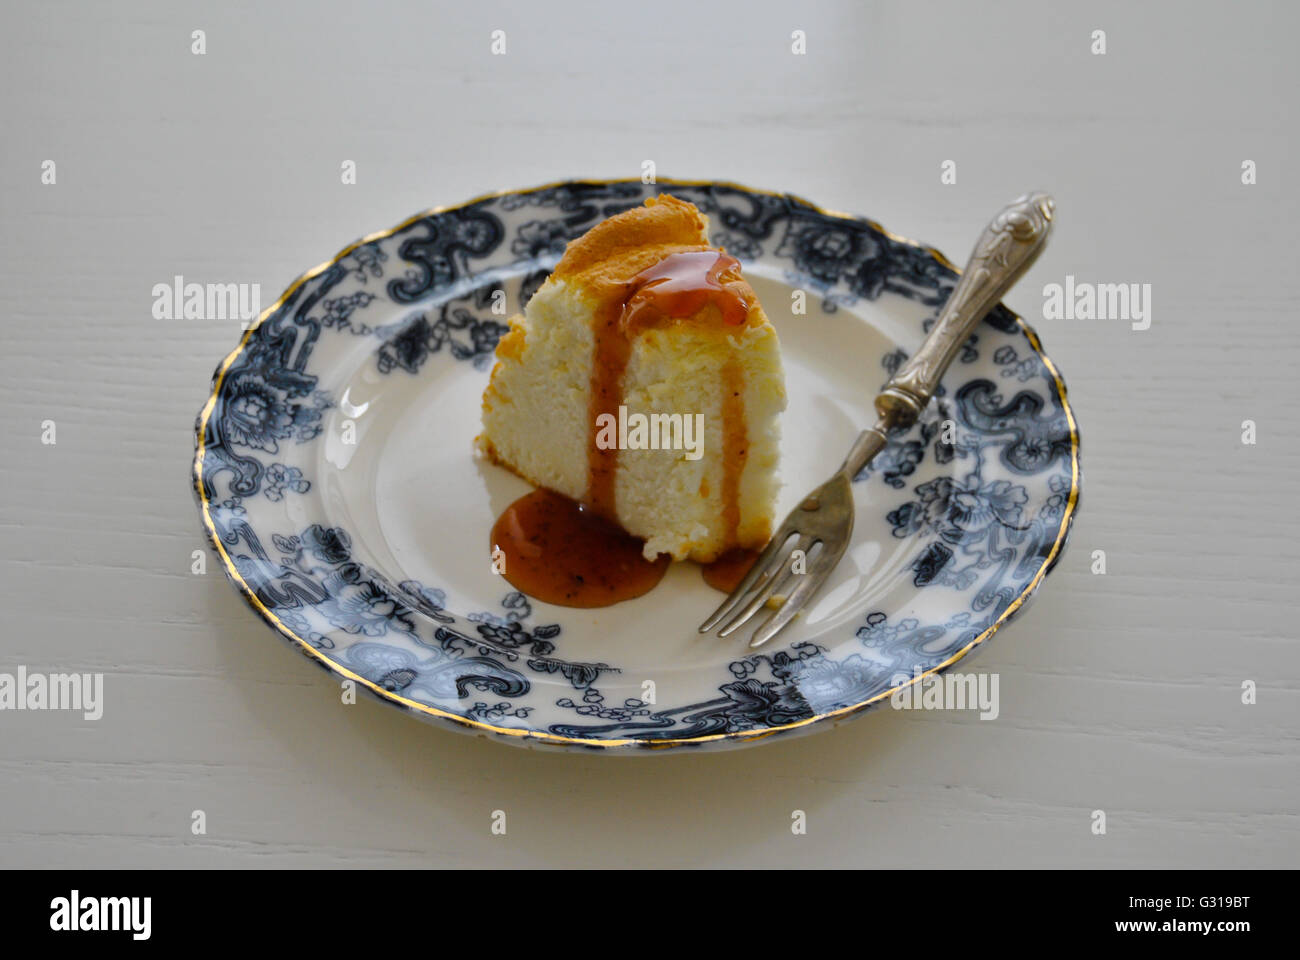 Gros plan d'une tranche de gâteau ange sur une assiette, dessert maison. L'alimentation Banque D'Images